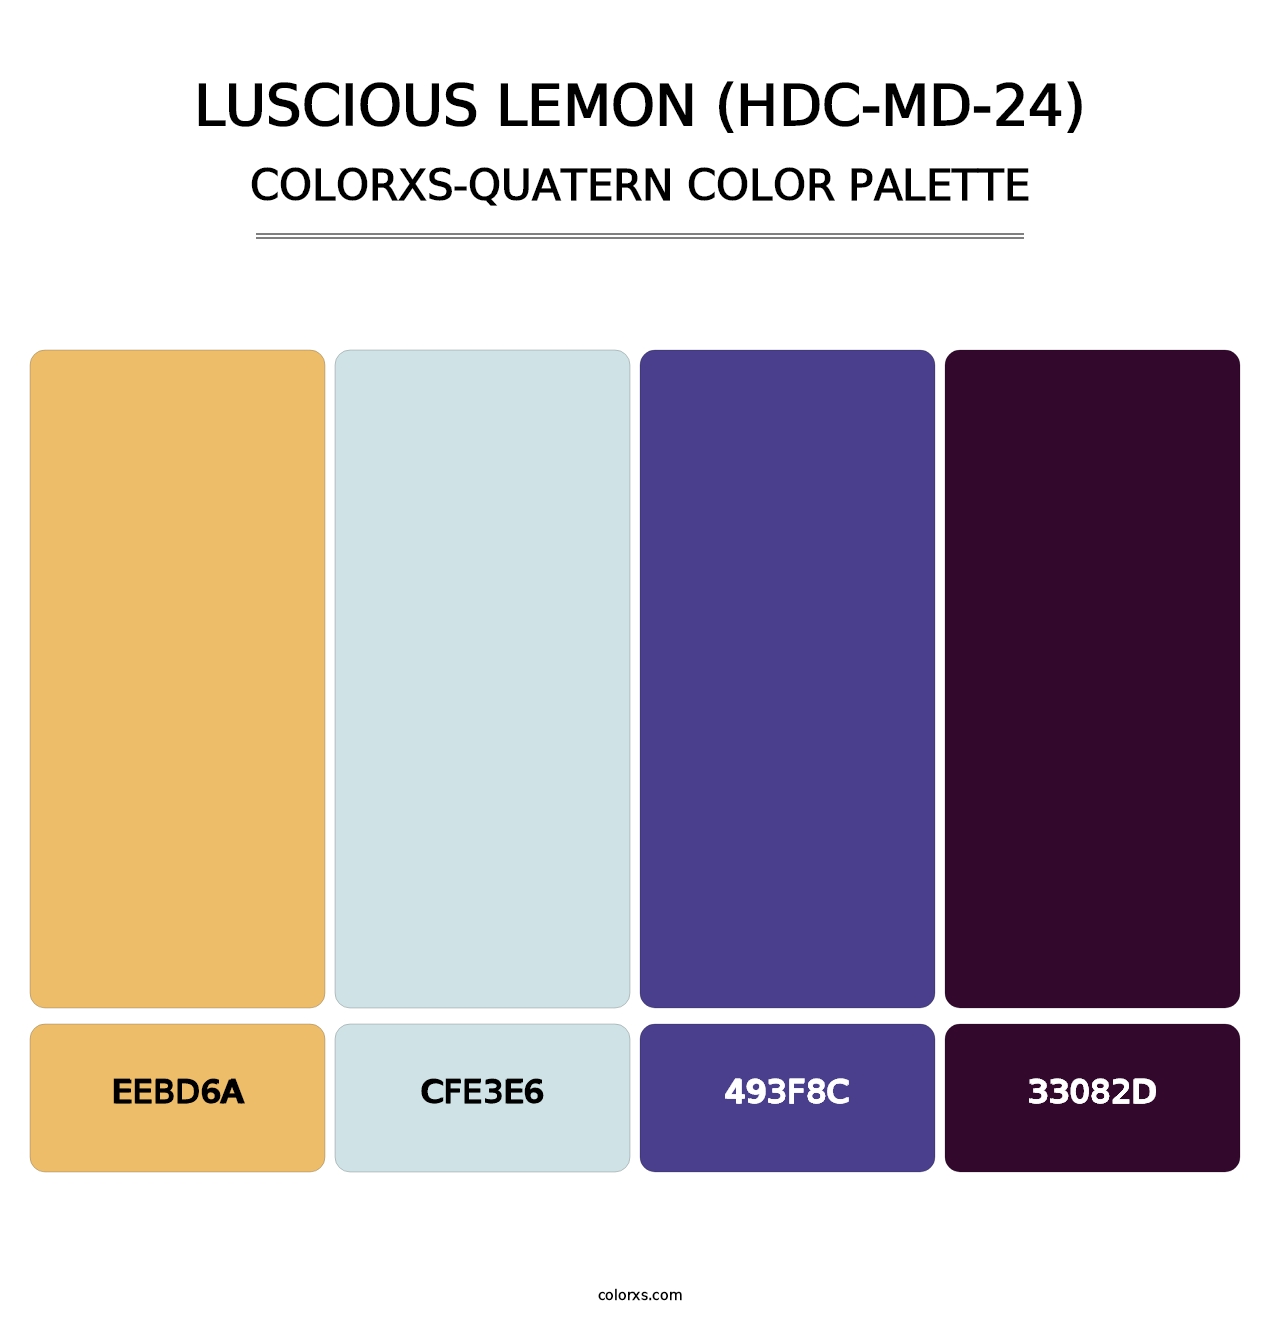 Luscious Lemon (HDC-MD-24) - Colorxs Quatern Palette